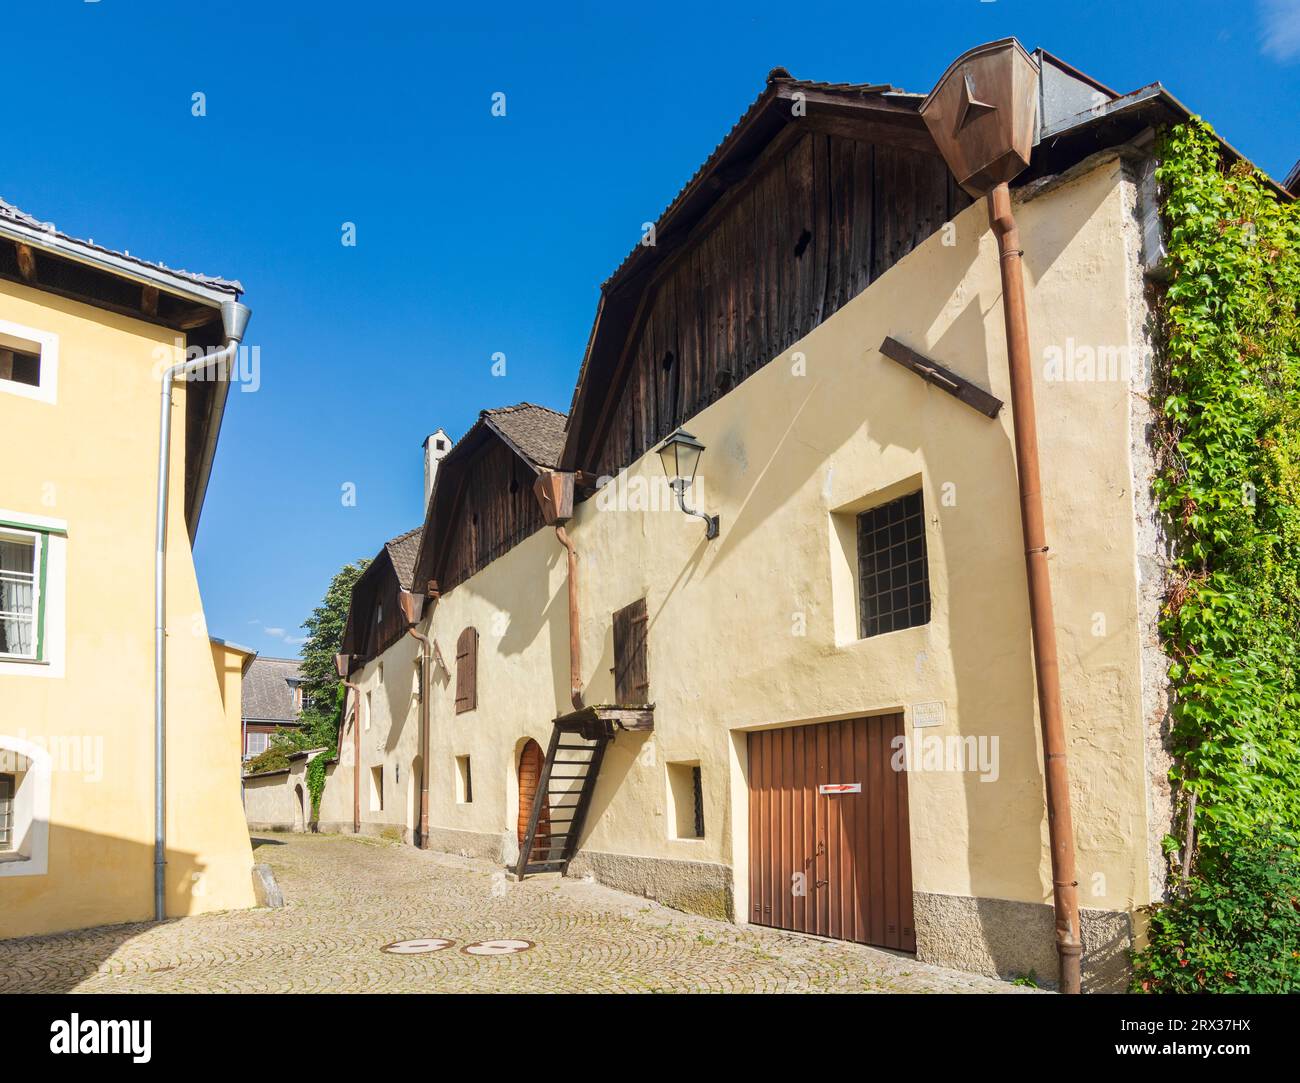 Gmünd in Kärnten: Old town houses in Nationalpark Hohe Tauern, Kärnten, Carinthia, Austria Stock Photo